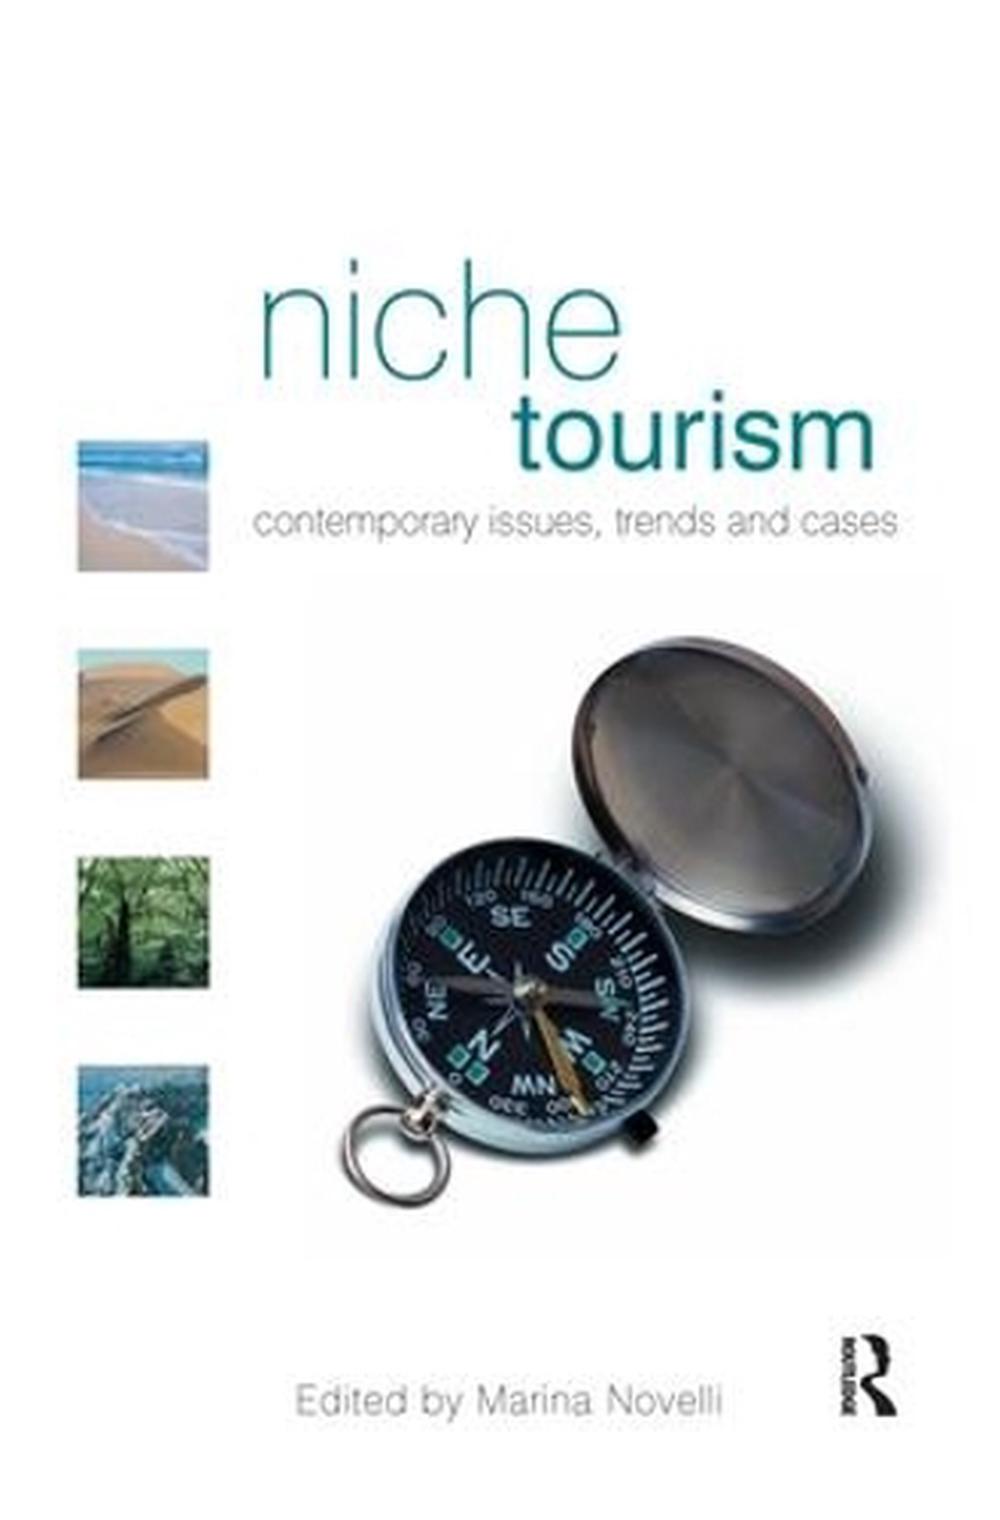 explain niche tourism